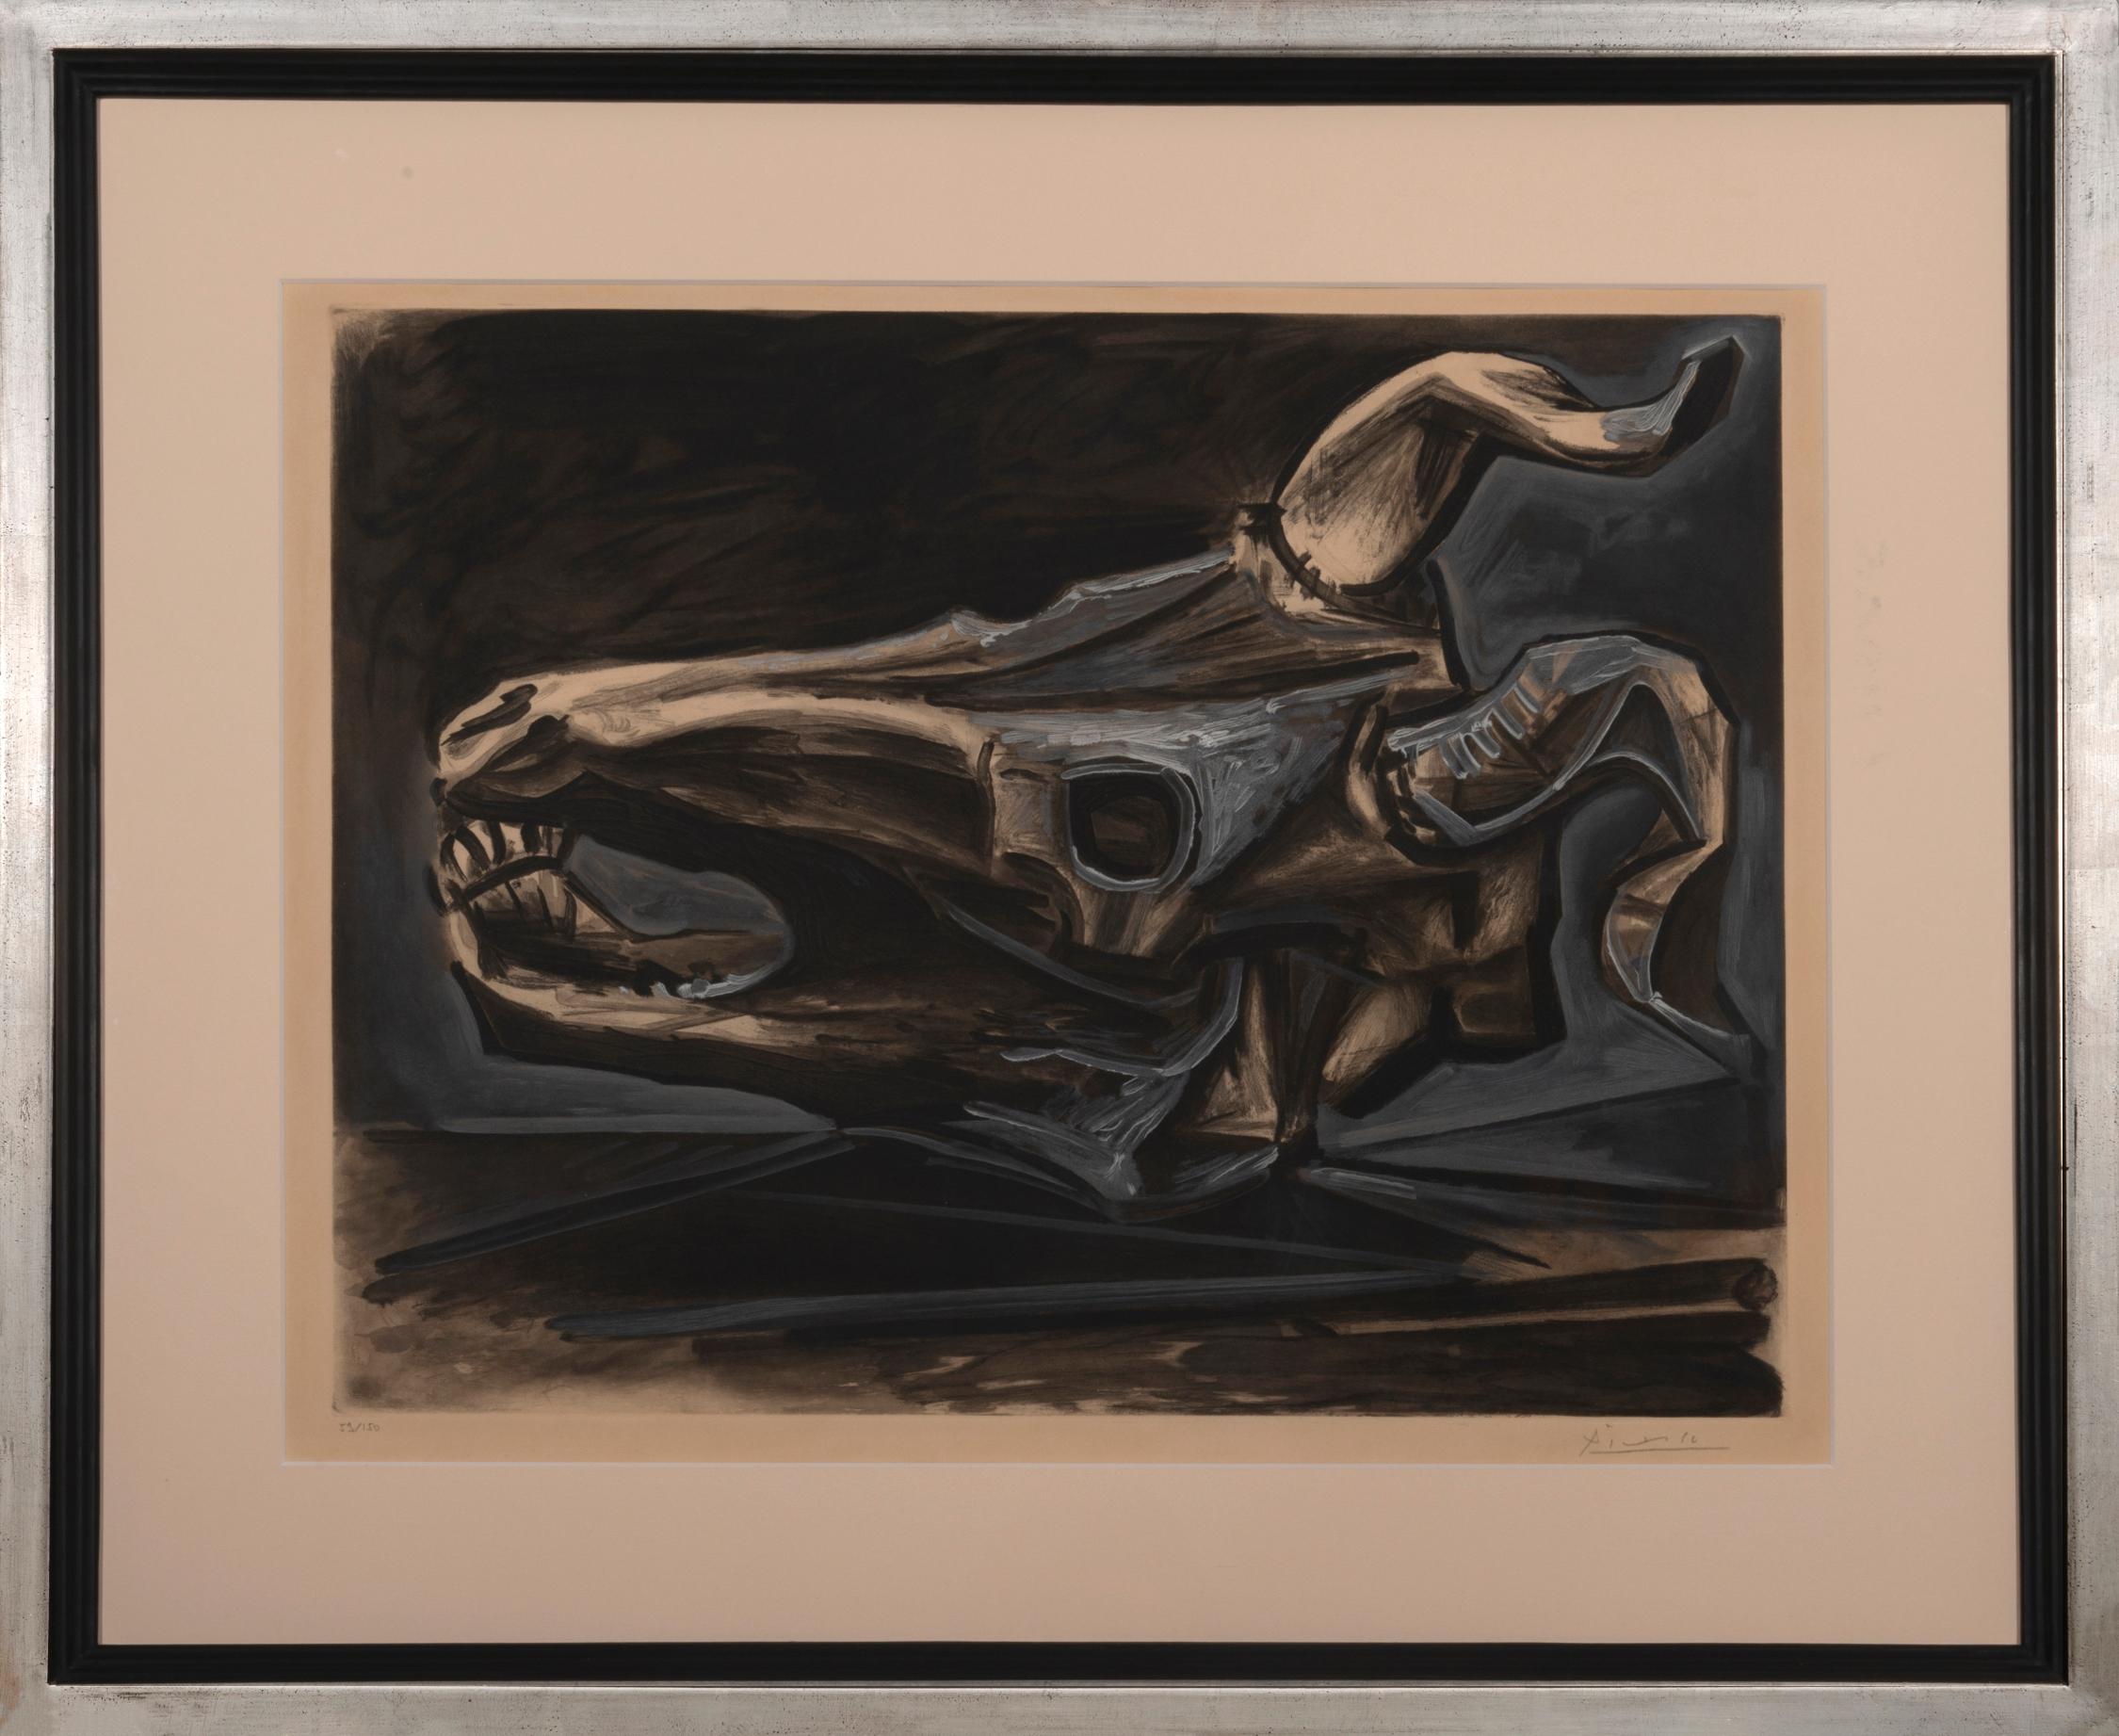 Goat Skull on the Table (Crâne de chèvre sur la table) - Print by Pablo Picasso